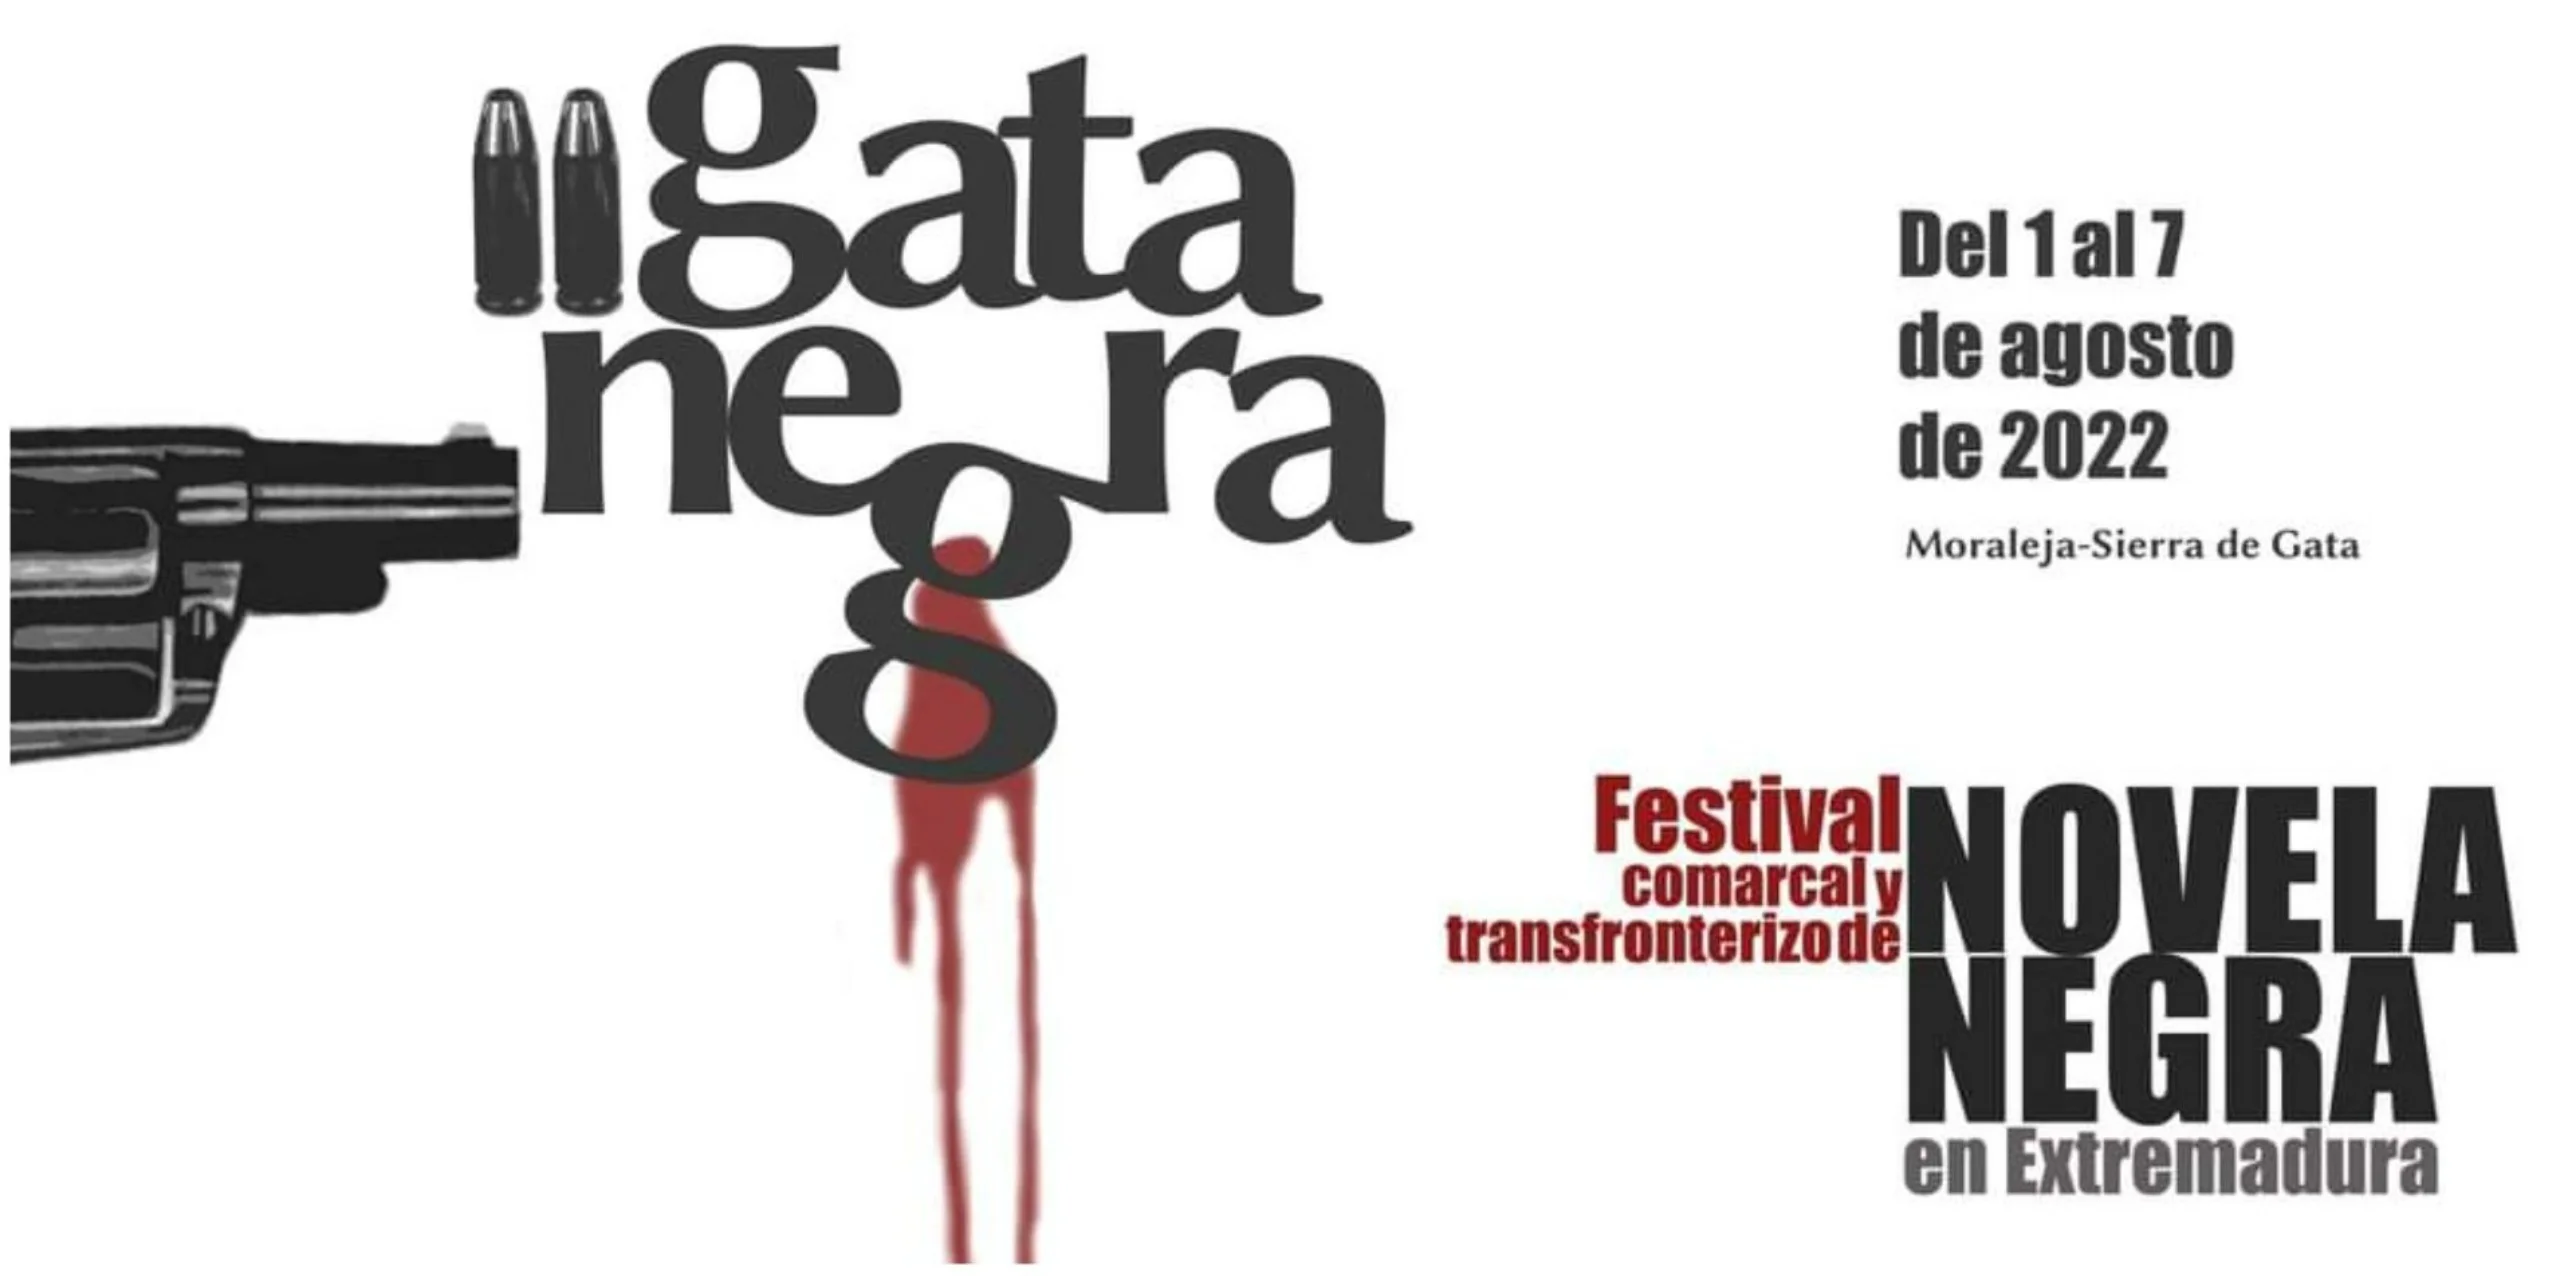 Aquí tienes los detalles del emocionante Gata Negra, un festival único en Extremadura